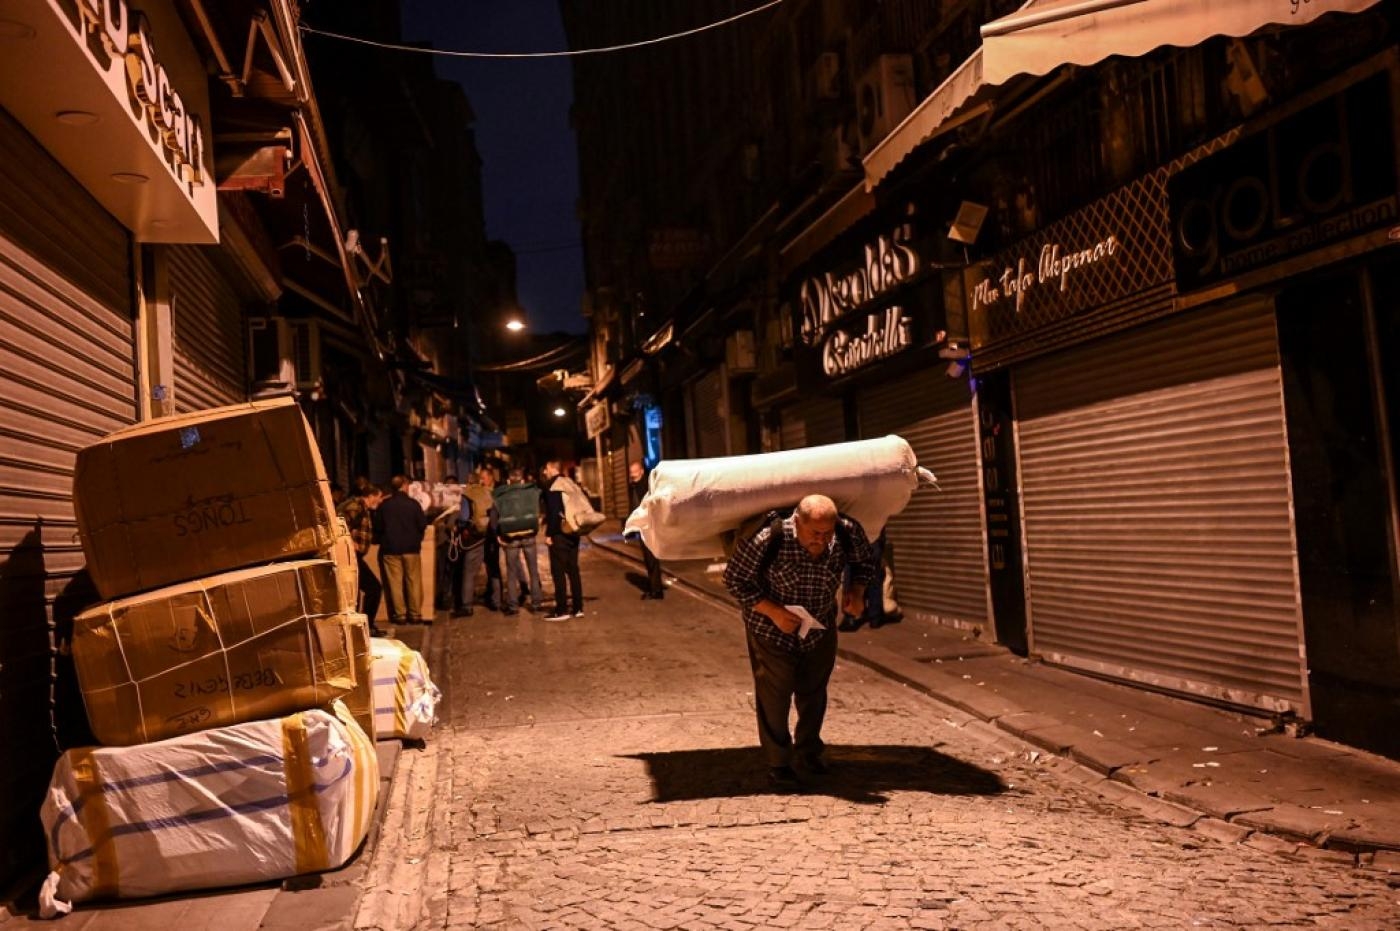 Un porteur transporte des marchandises alors que d’autres attendent leur tour, au petit matin près du grand bazar à Istanbul, le 28 octobre 2021 (AFP)